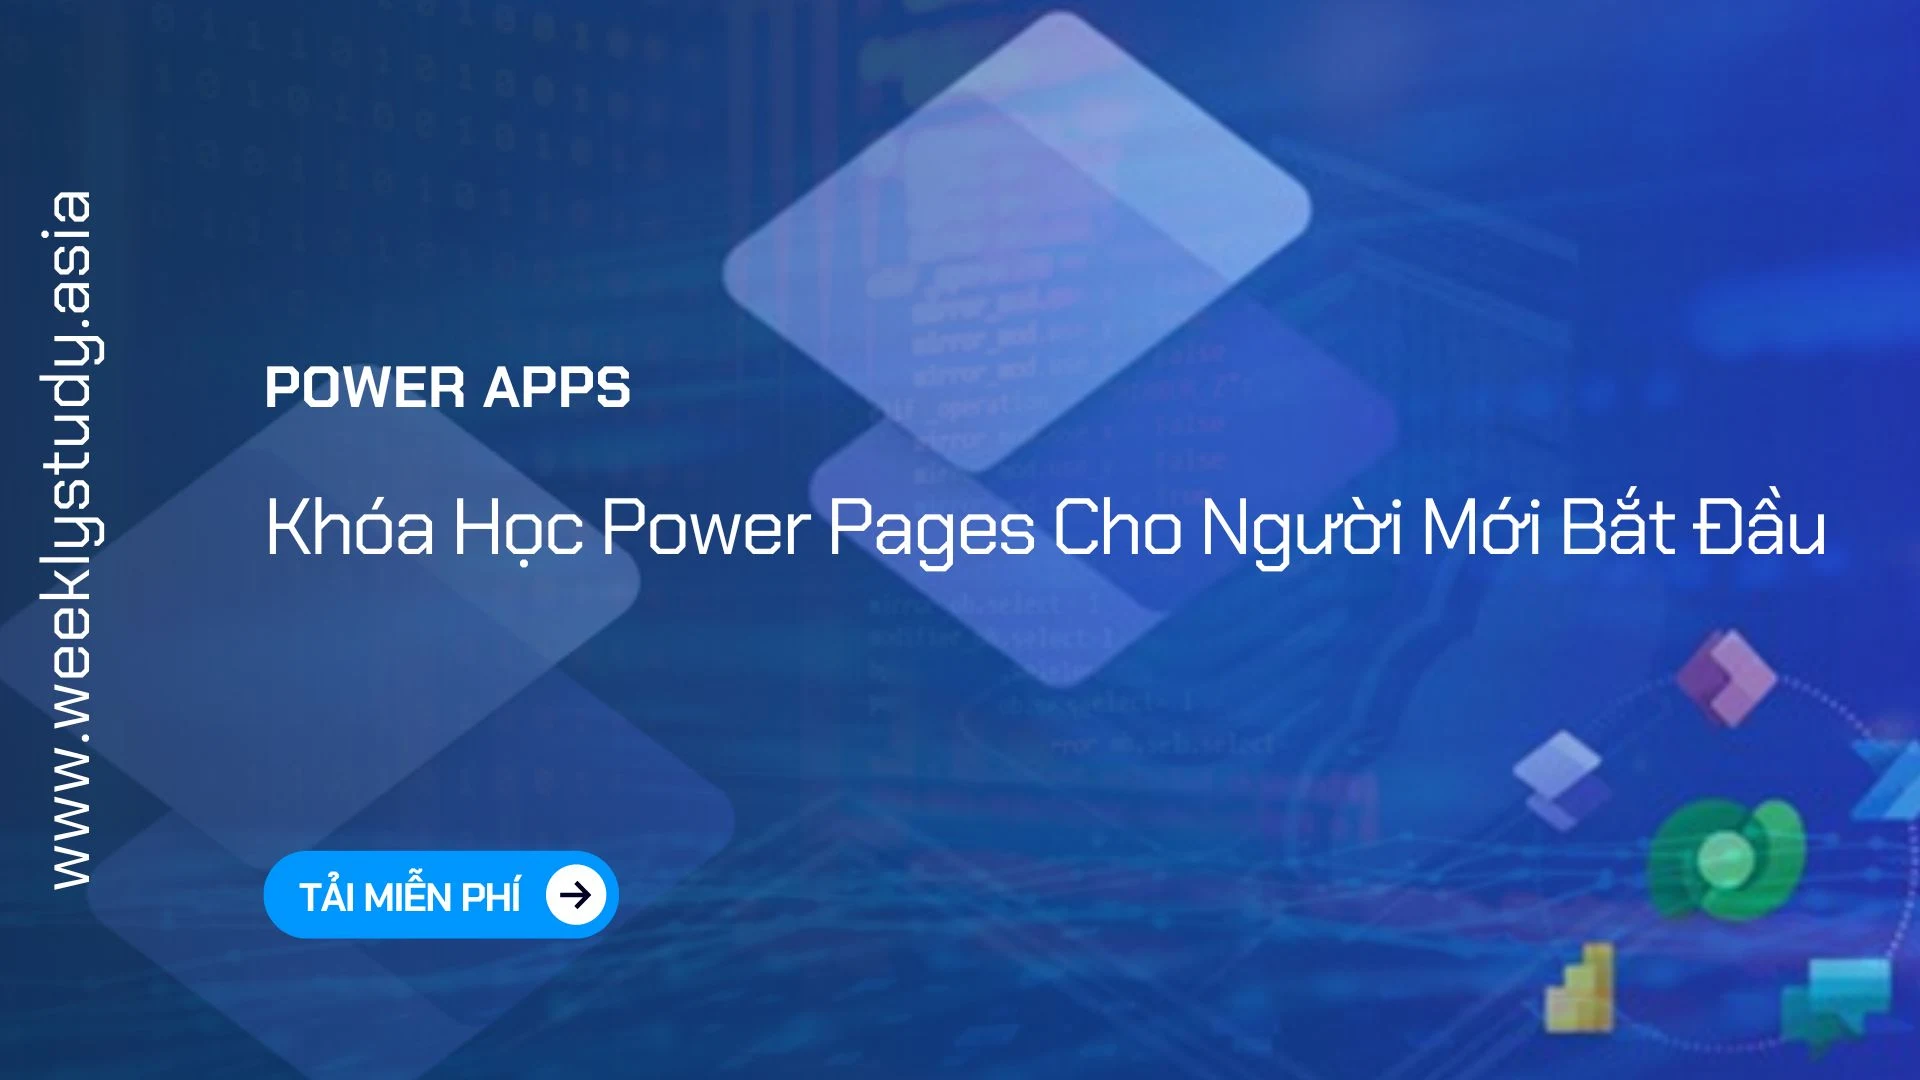 weekly-study-khoa-hoc-power-pages-cho-nguoi-moi-bat-dau-ma-6942a